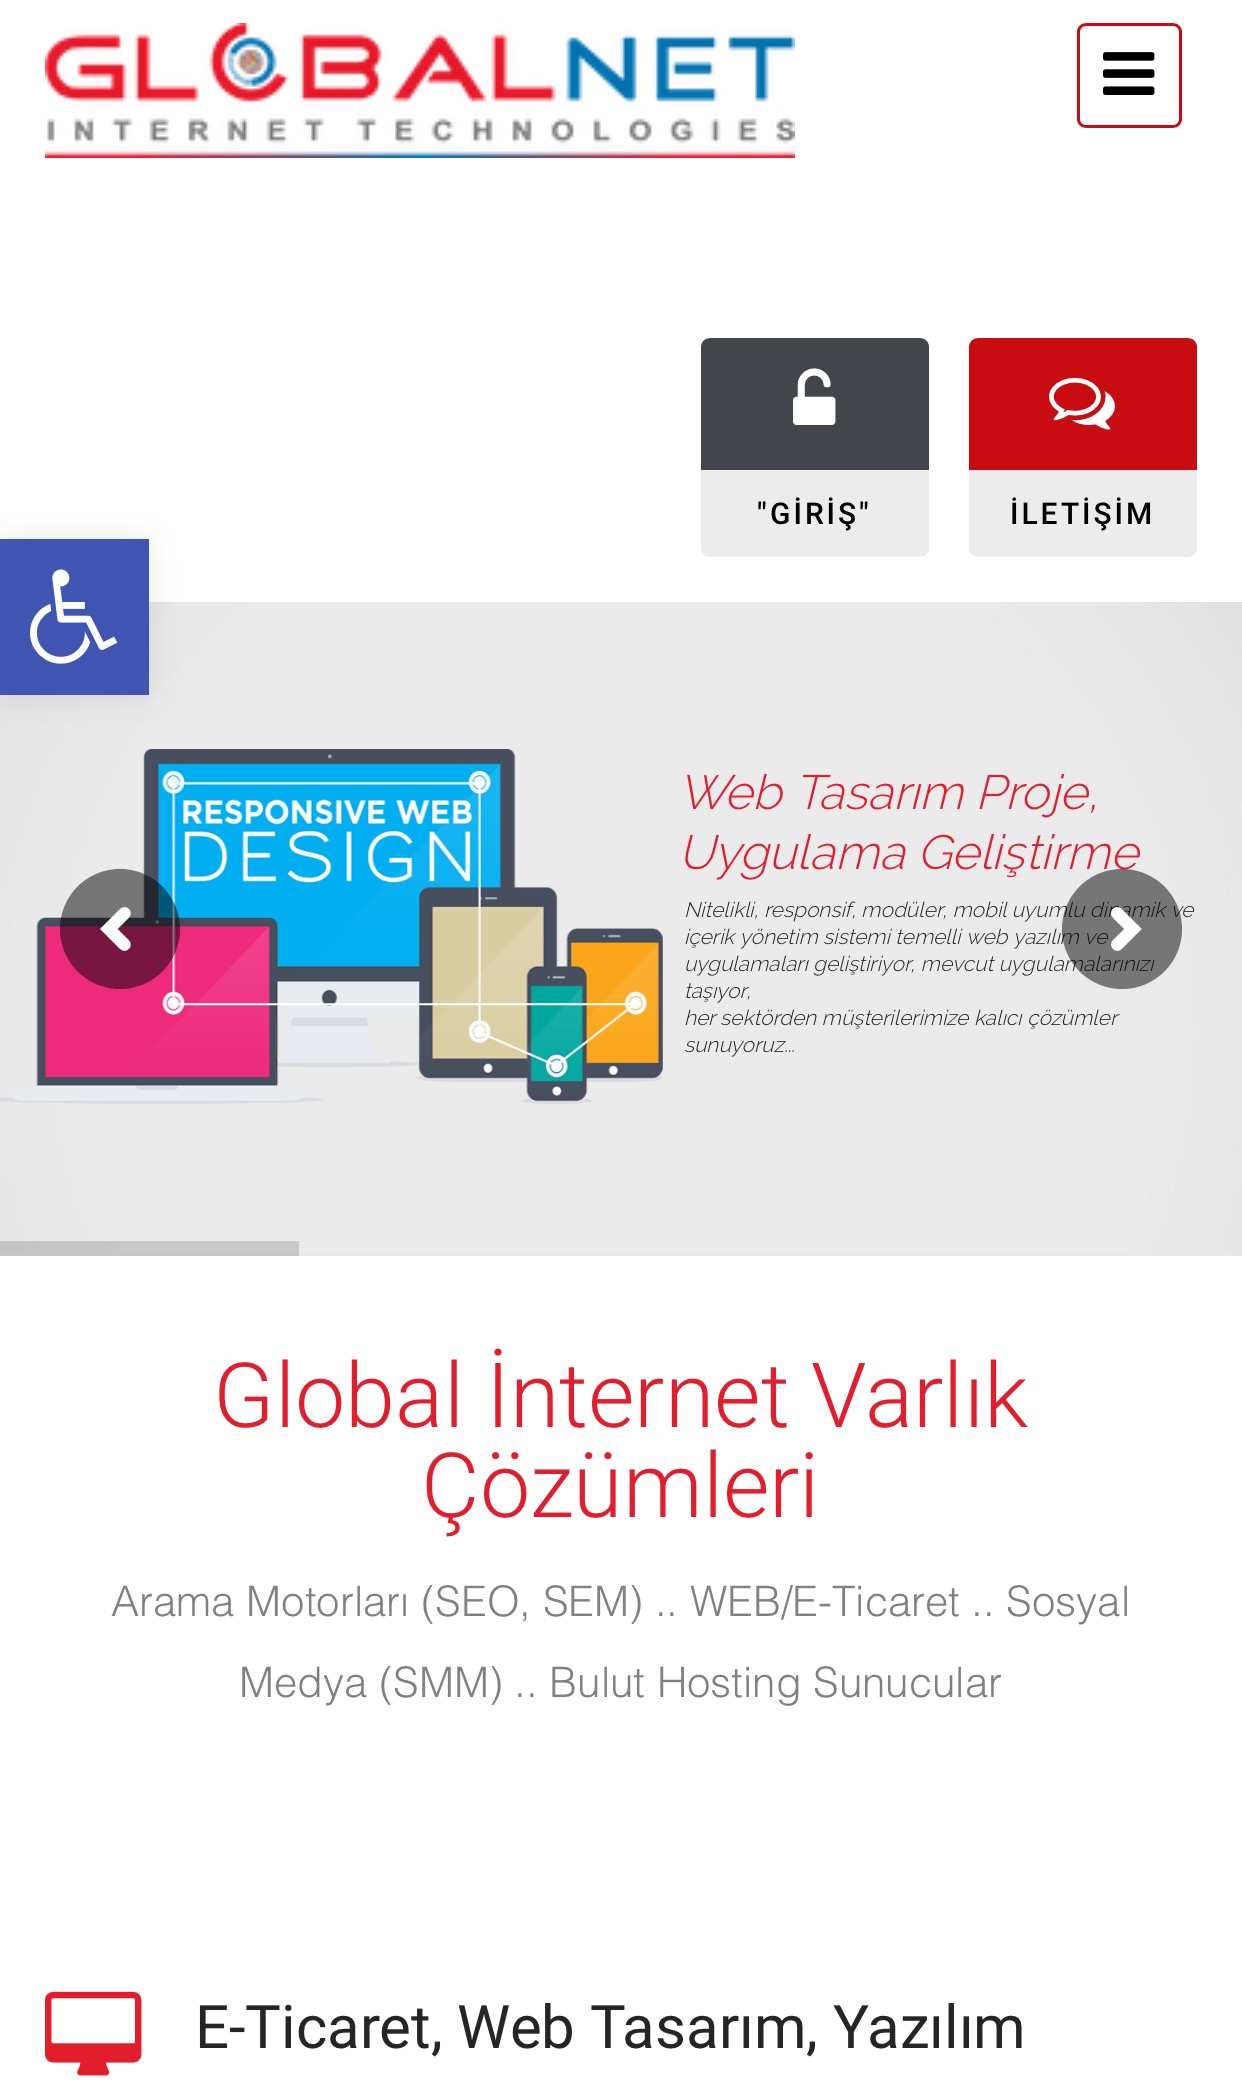 GLOBALNET WEB SİTESİ ARTIK ENGELSİZ..